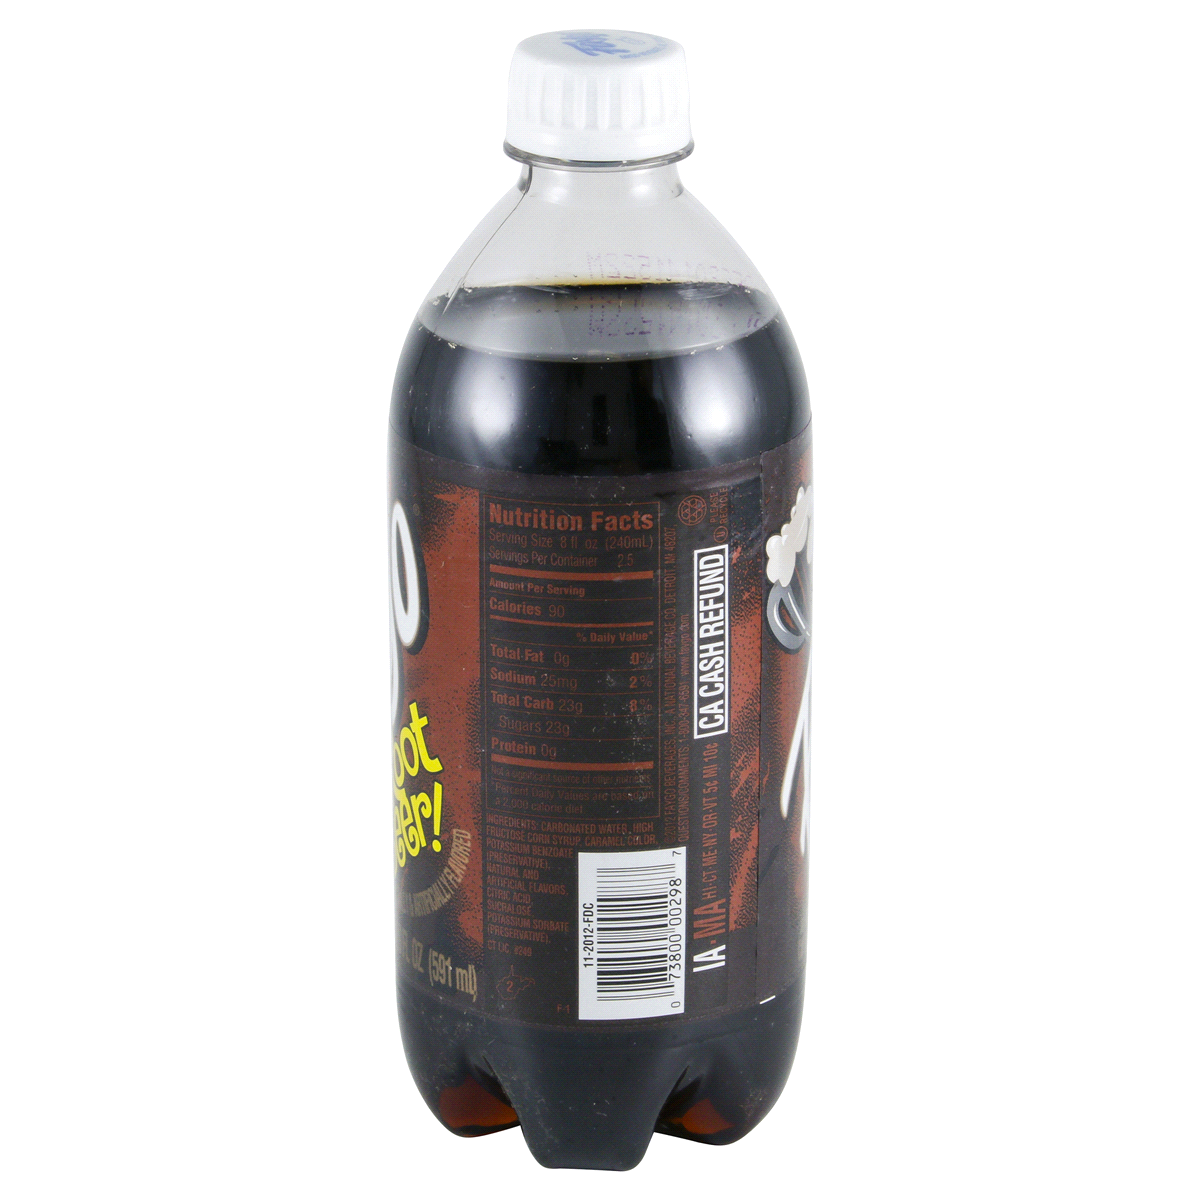 slide 4 of 4, Faygo Draft Style Root Beer Bottle, 20 fl oz